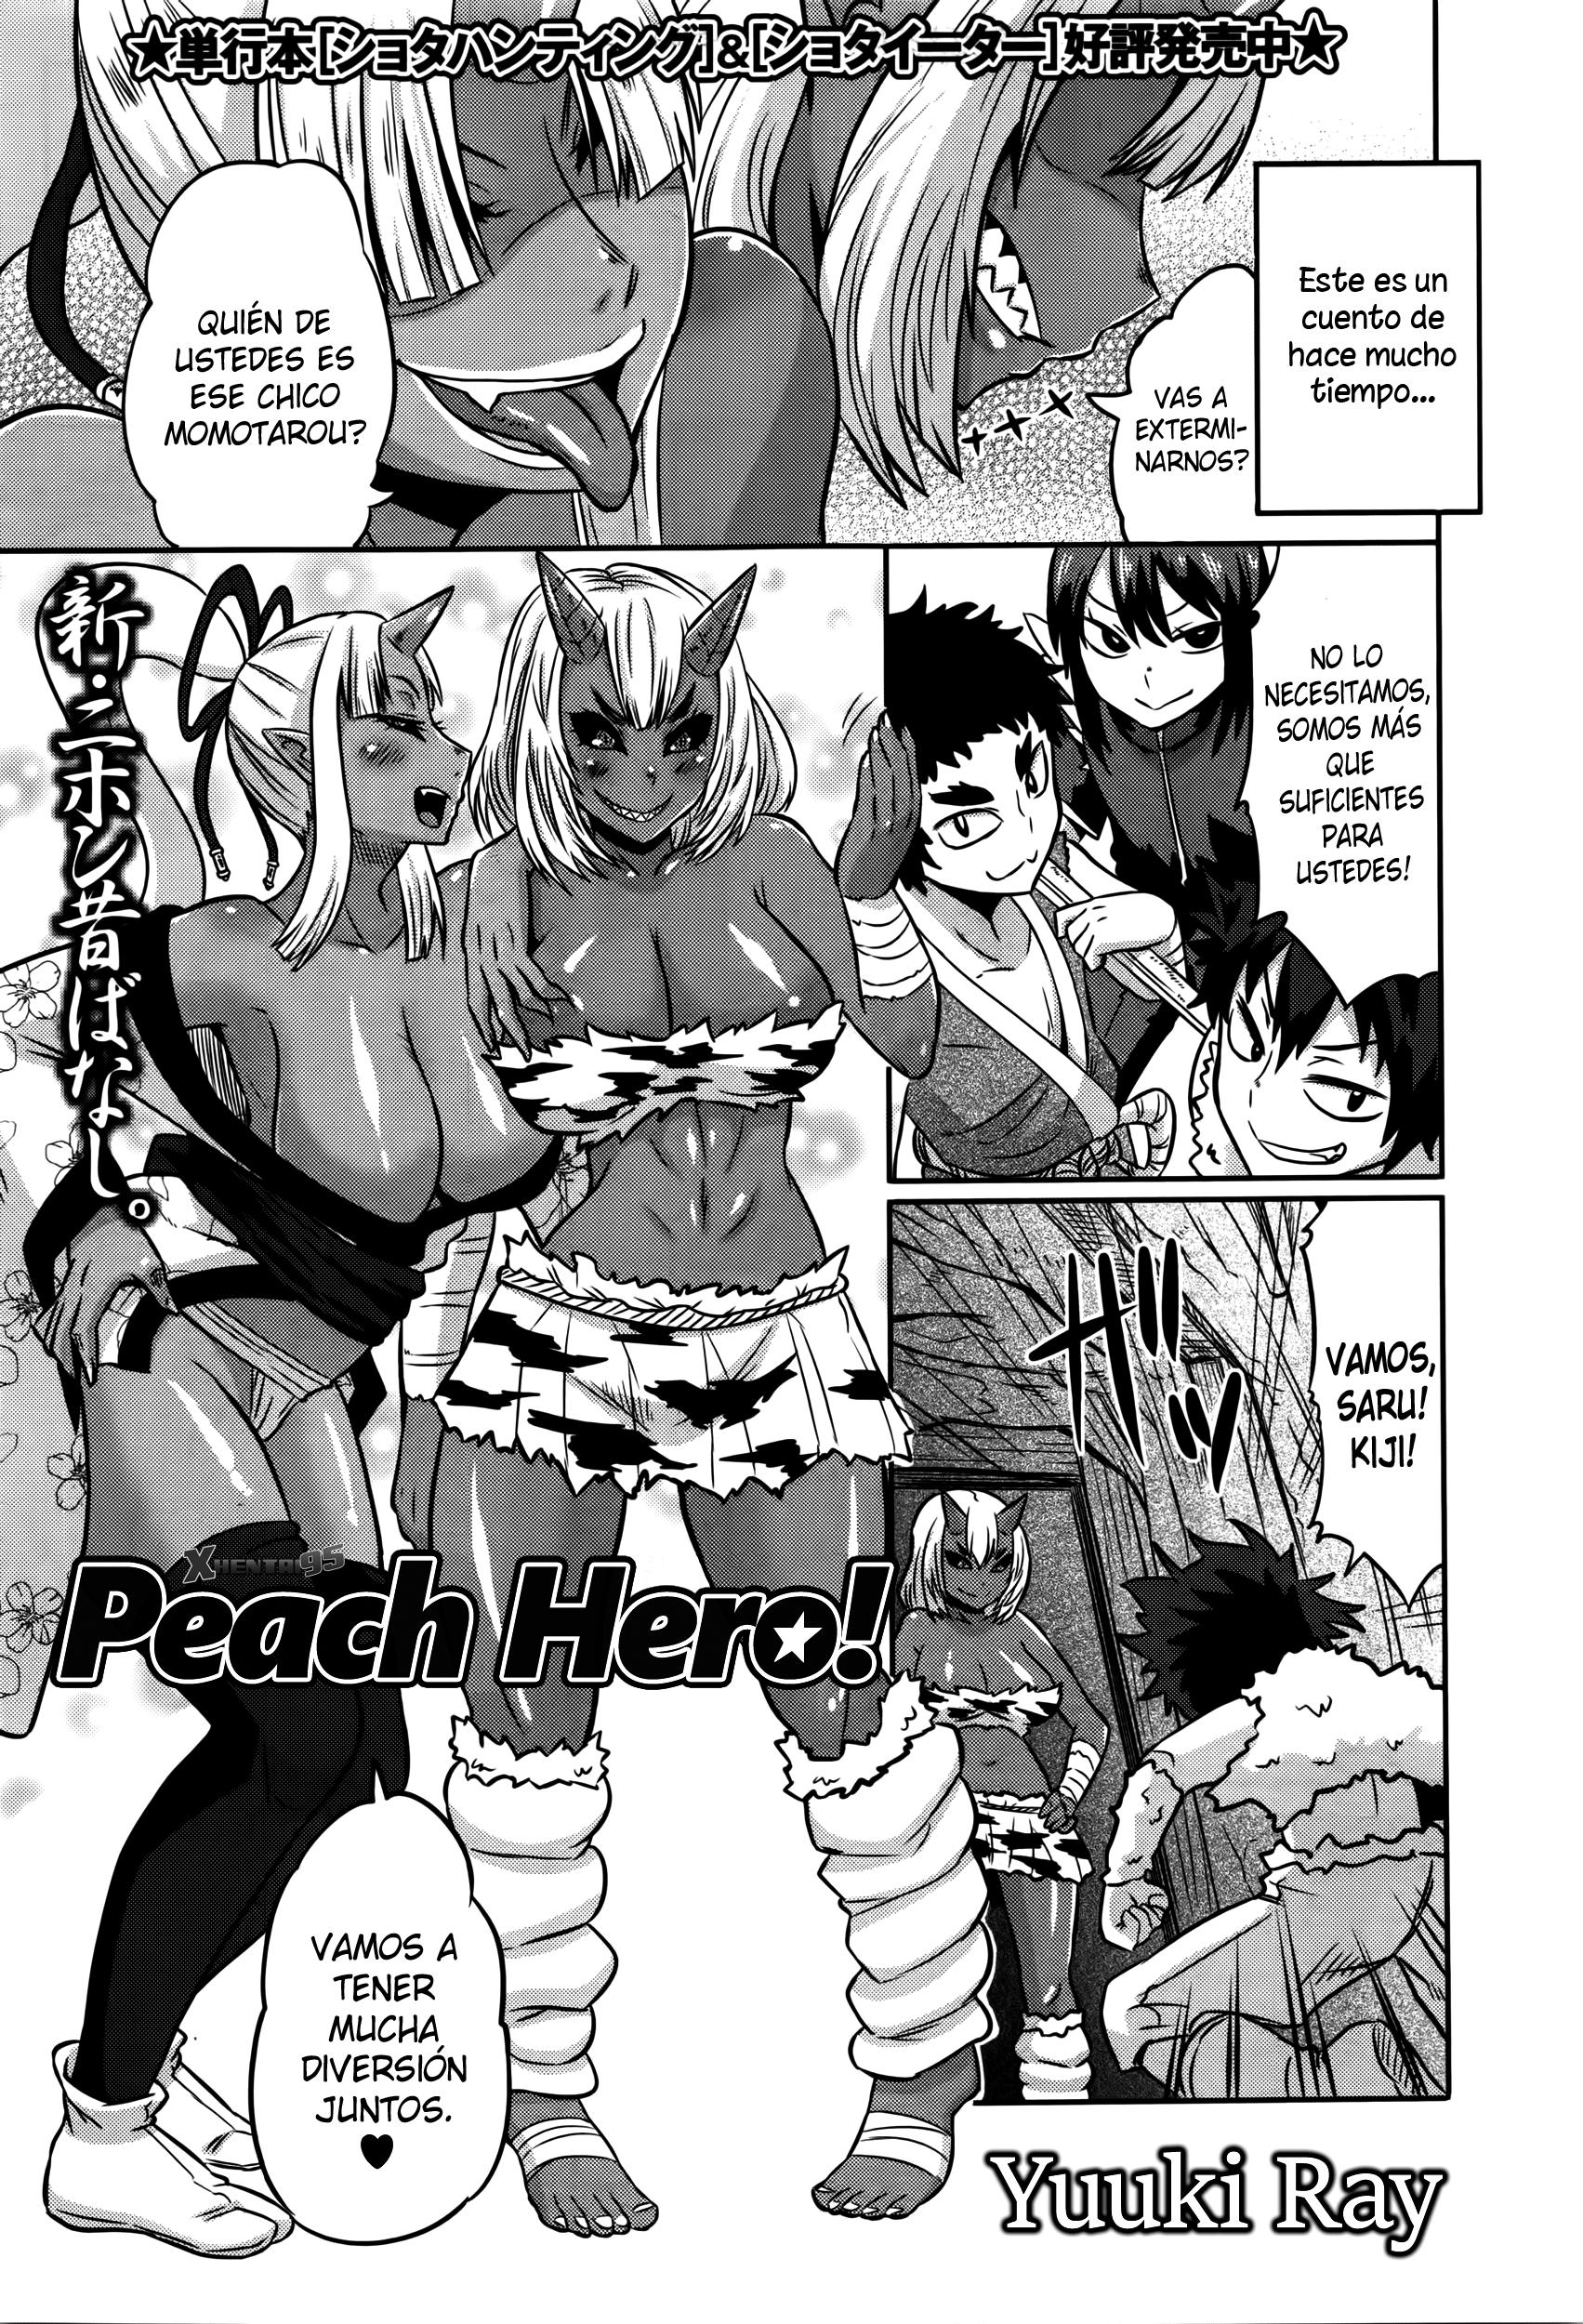 Peach Hero! Chapter-1 - 0